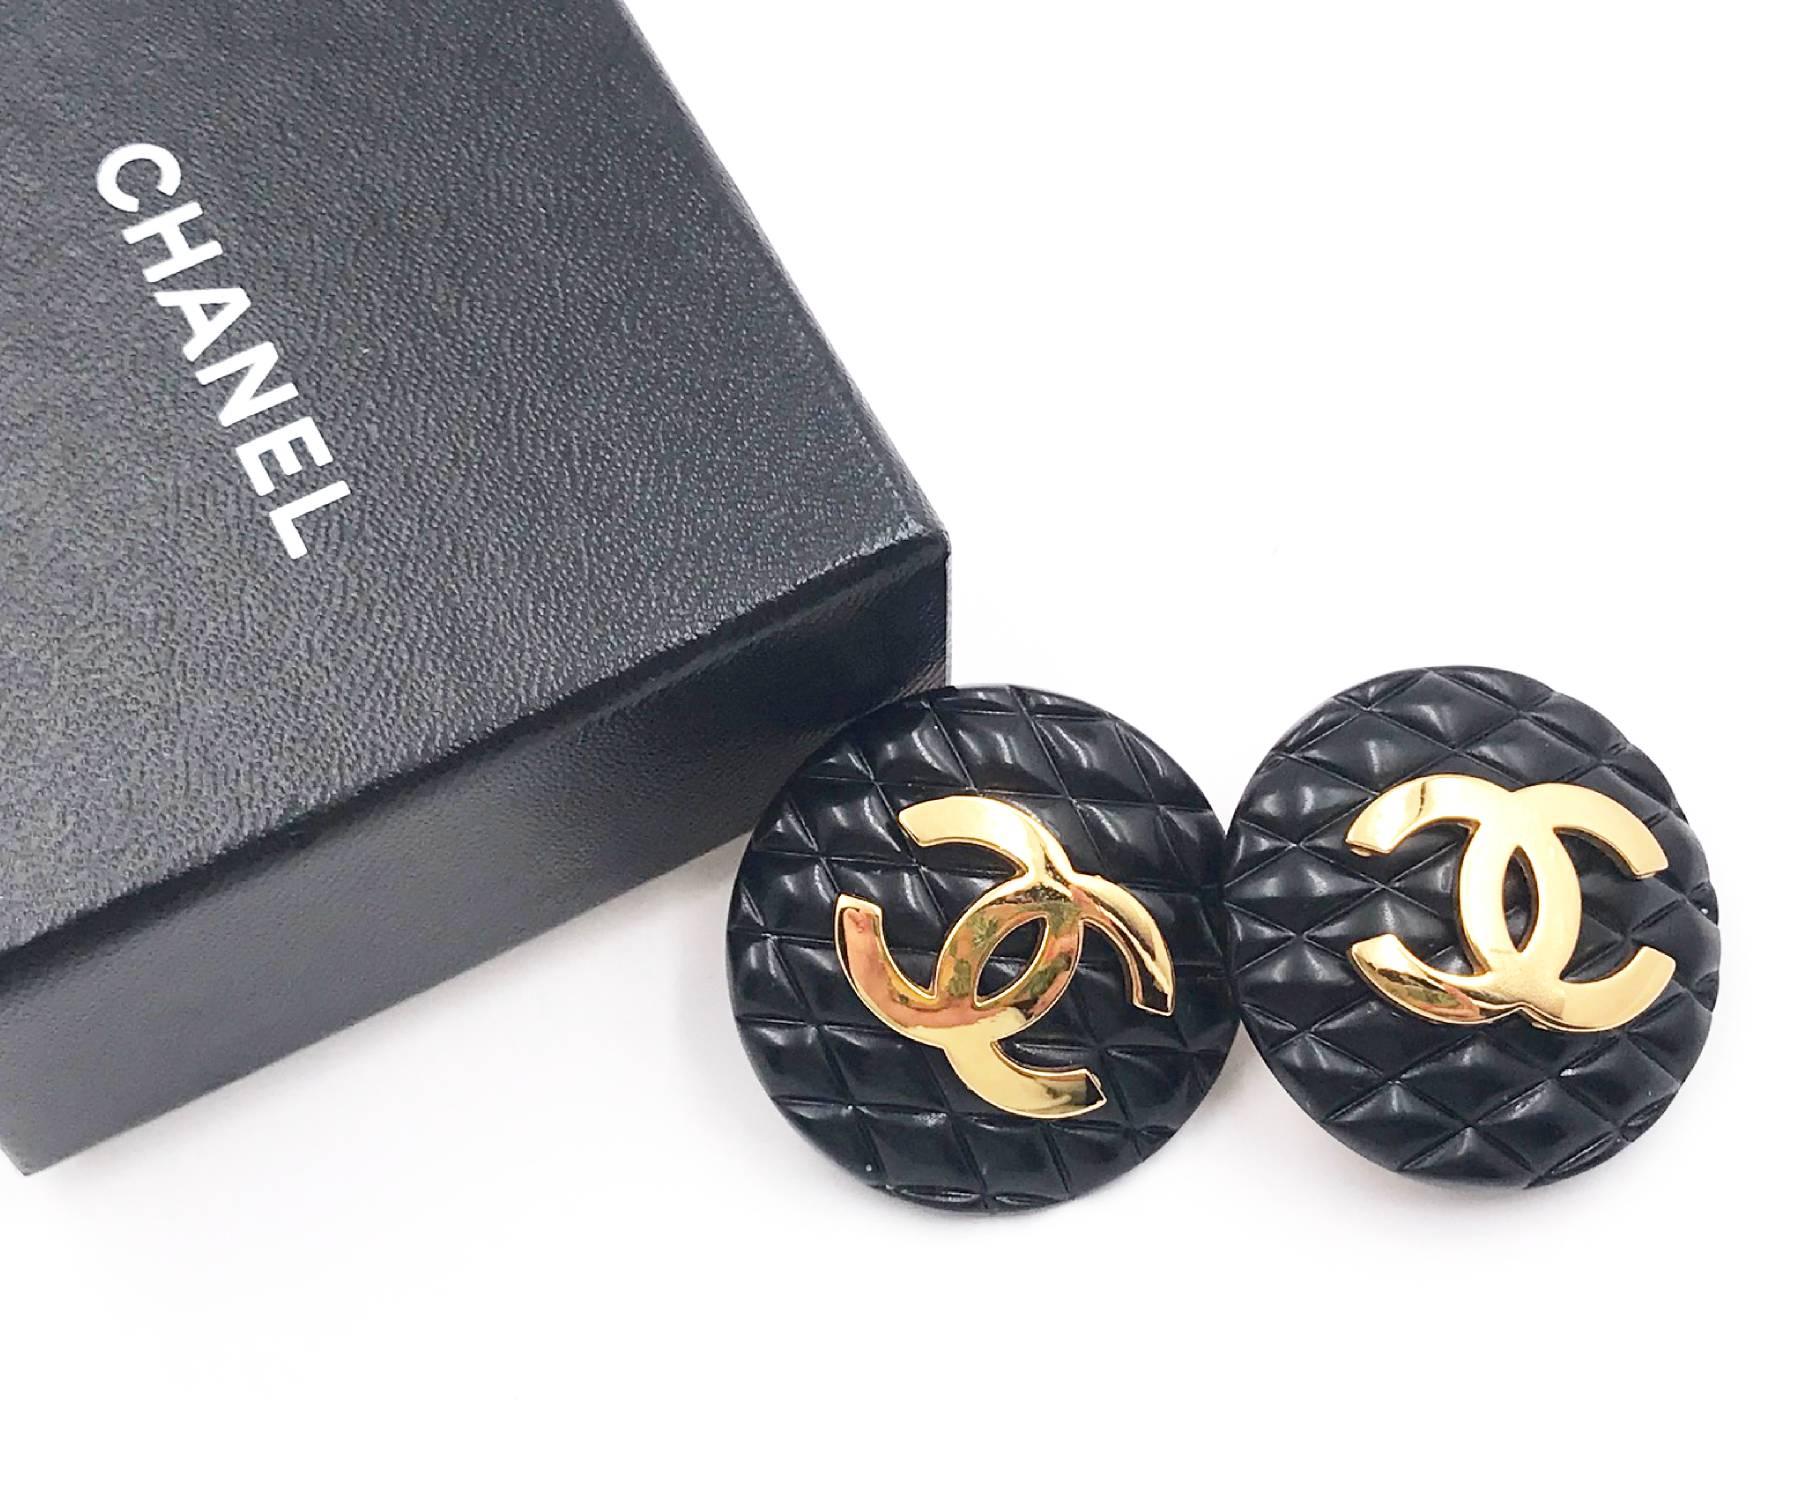 Chanel Rare Classic Black Quilted Gold CC Large Clip auf Ohrringe wie auf Ashlee Simpson gesehen

* Markiert 29
* Hergestellt in Frankreich
*Kommt mit der Originalverpackung und Anhänger
*Wie bei Ashlee Simpson gesehen

-Sie ist ungefähr 1,5